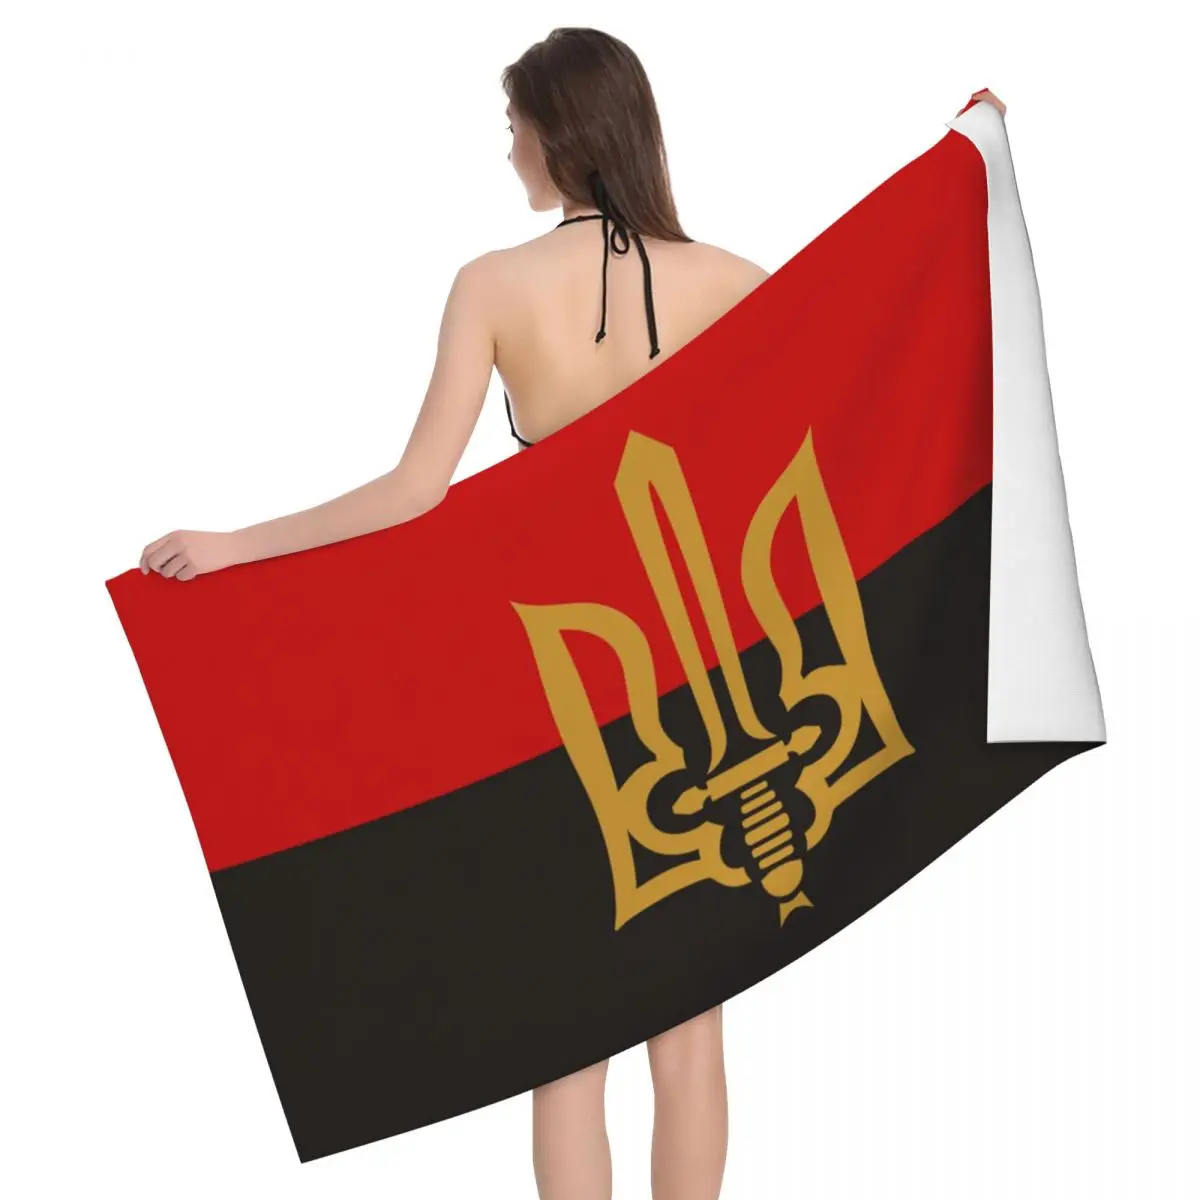 Полотенце флаг